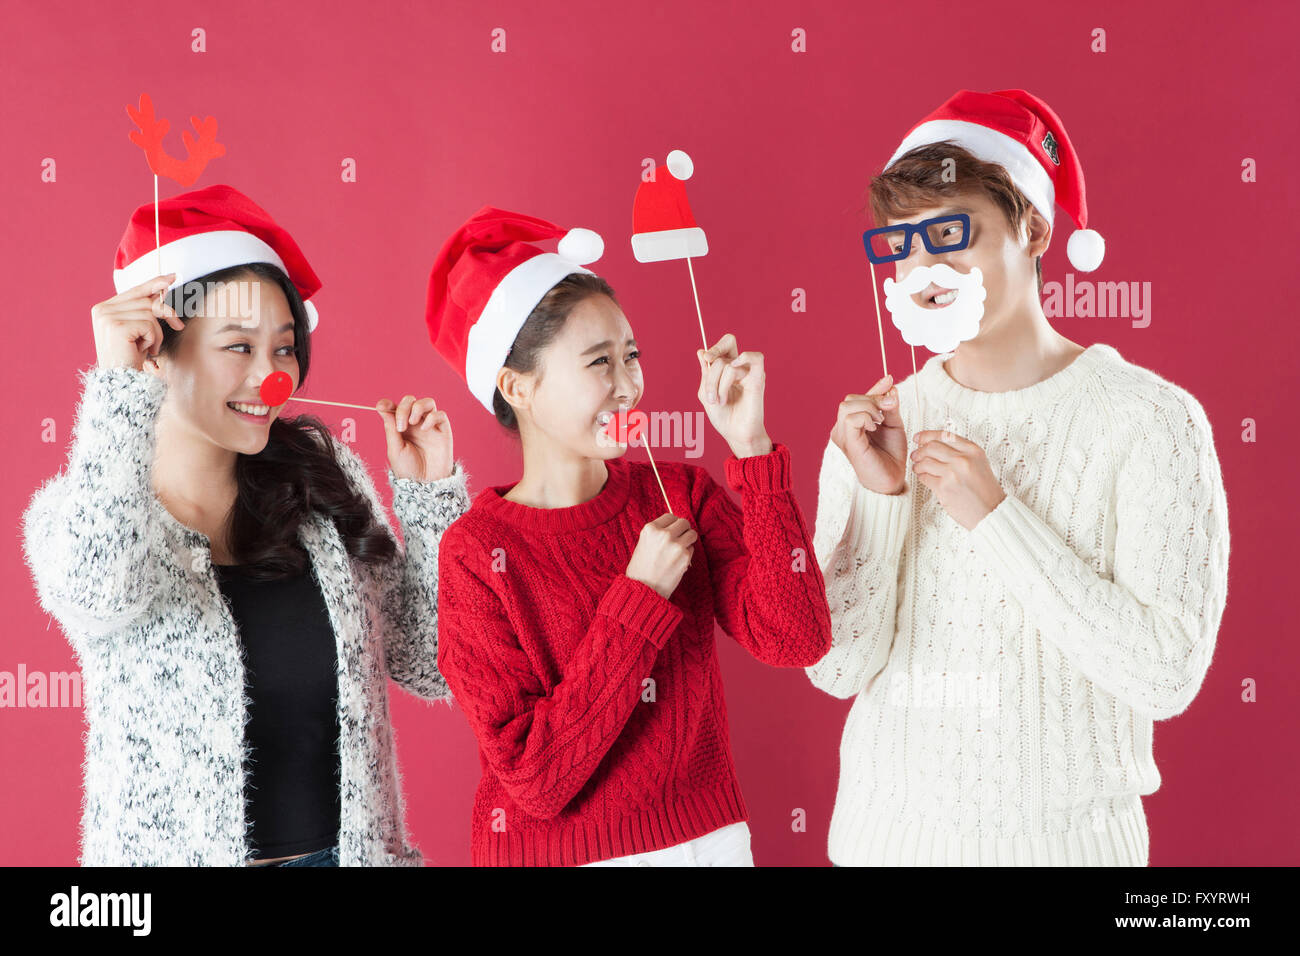 Portrait de trois jeunes smiling people at Christmas party Banque D'Images